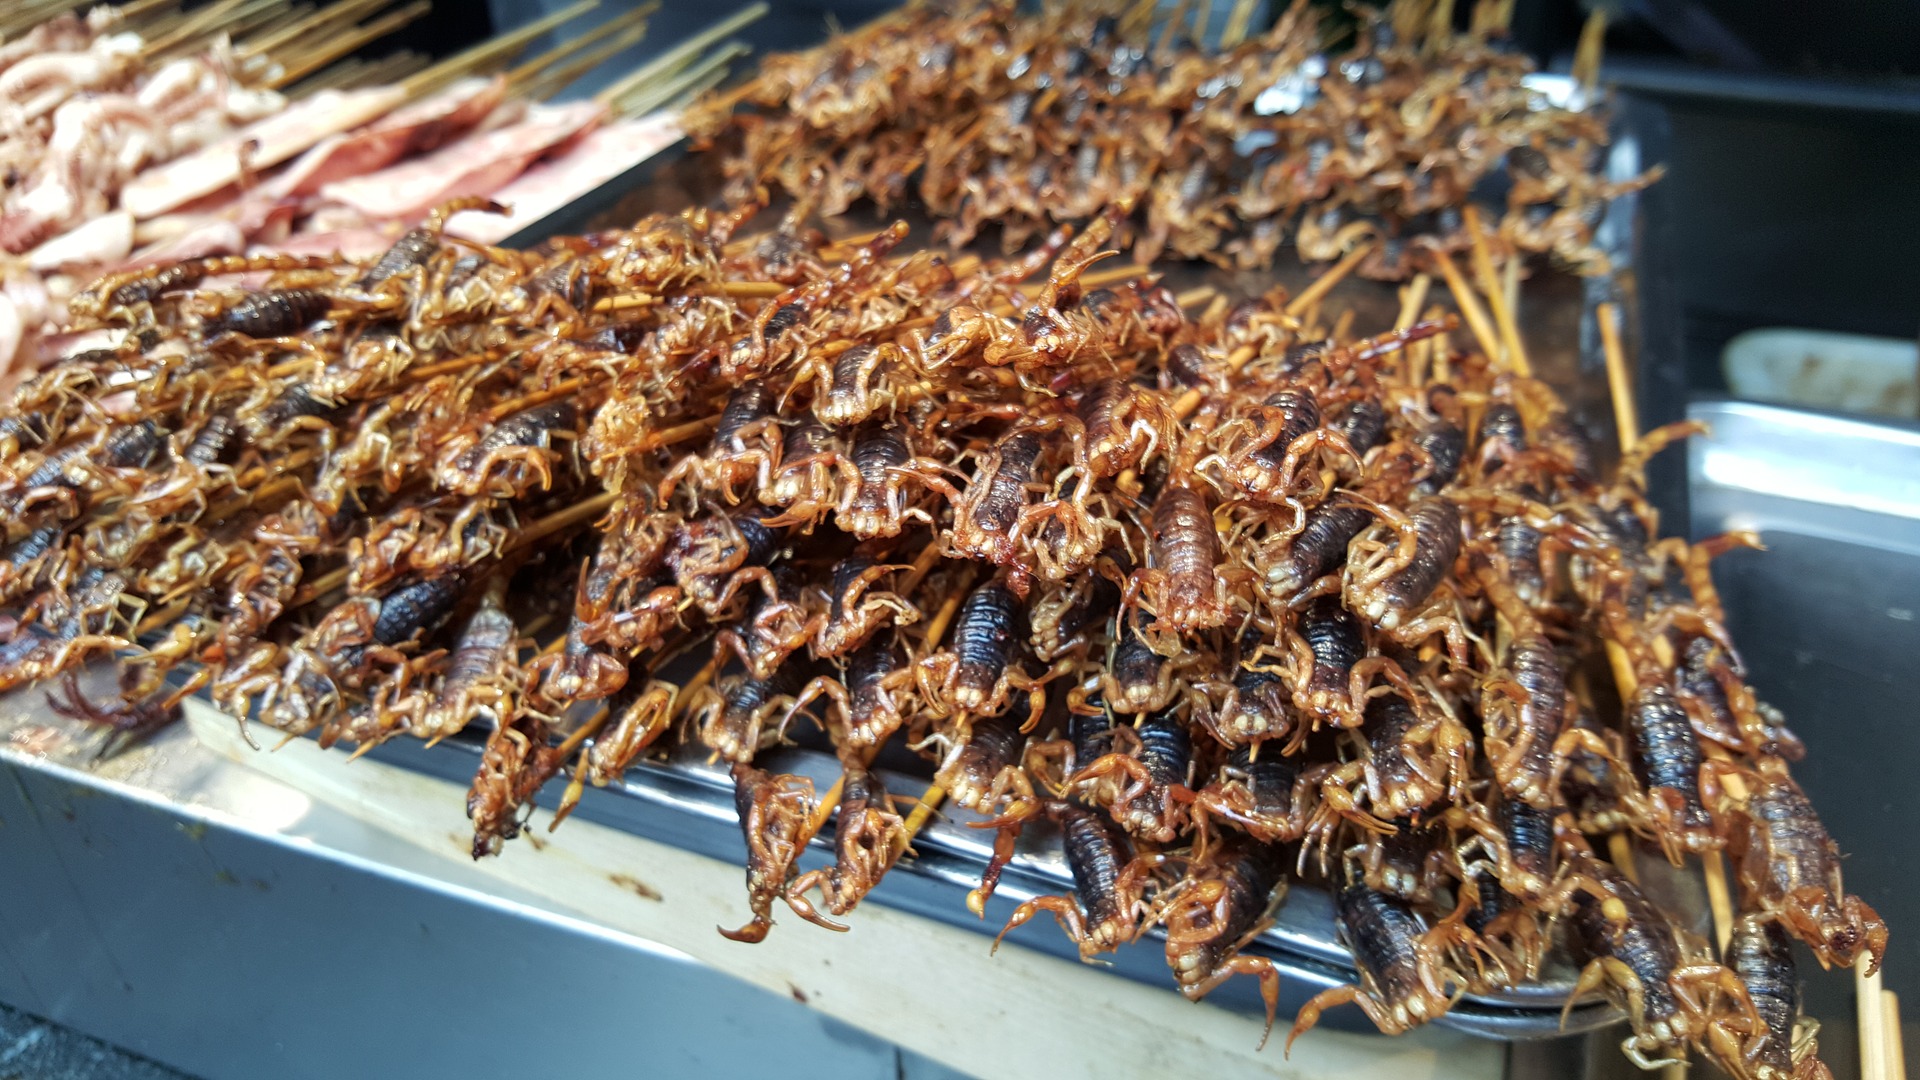 Fried Scorpions